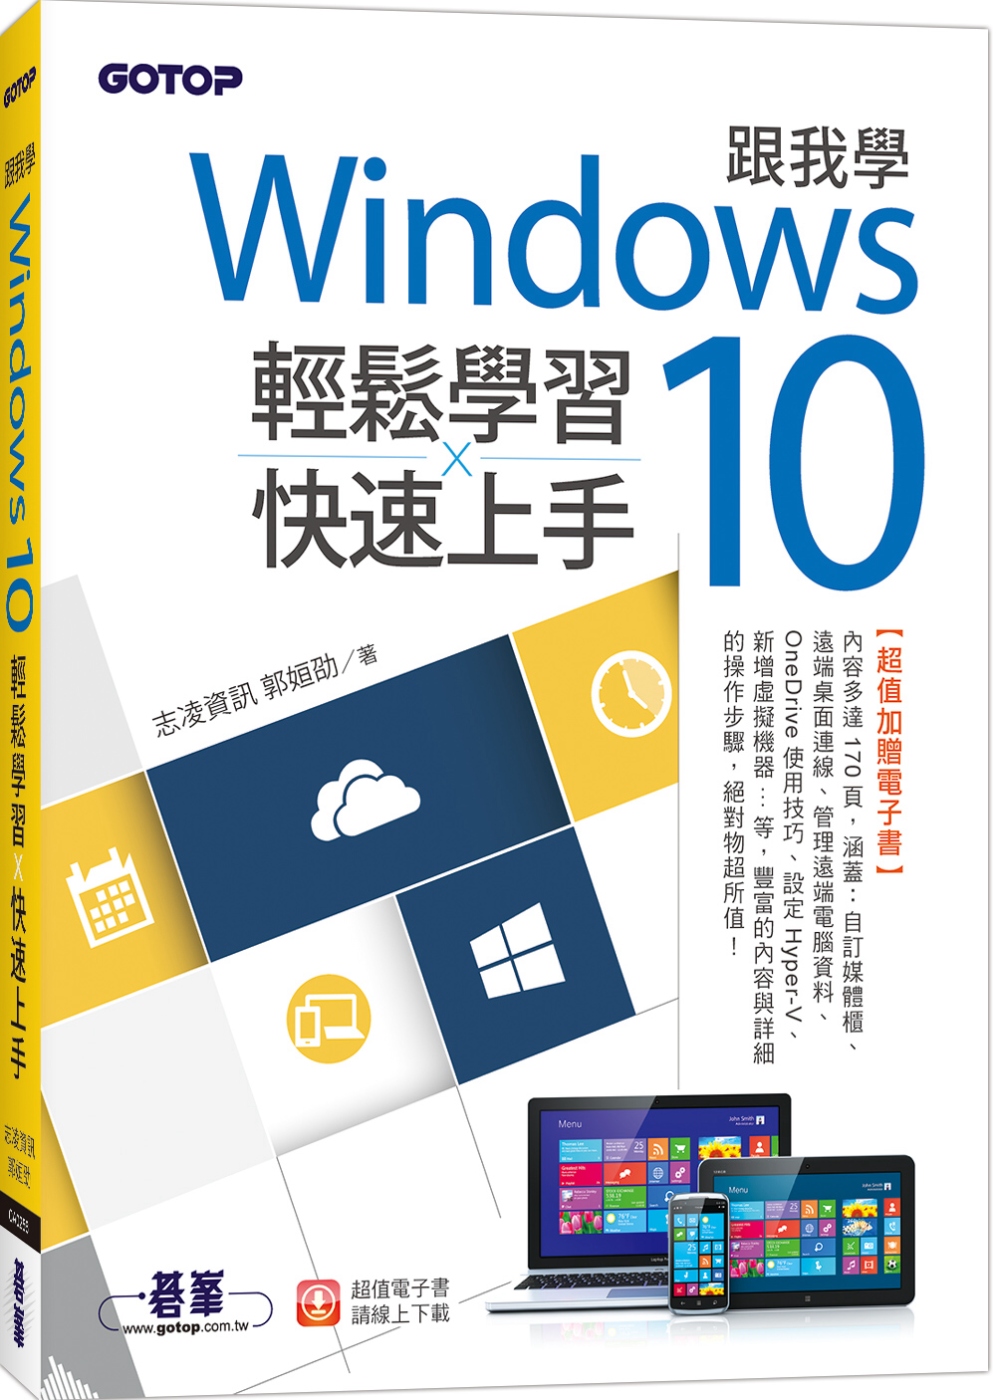 跟我學Windows 10輕鬆學習x快速上手(加贈精選170頁電子書)